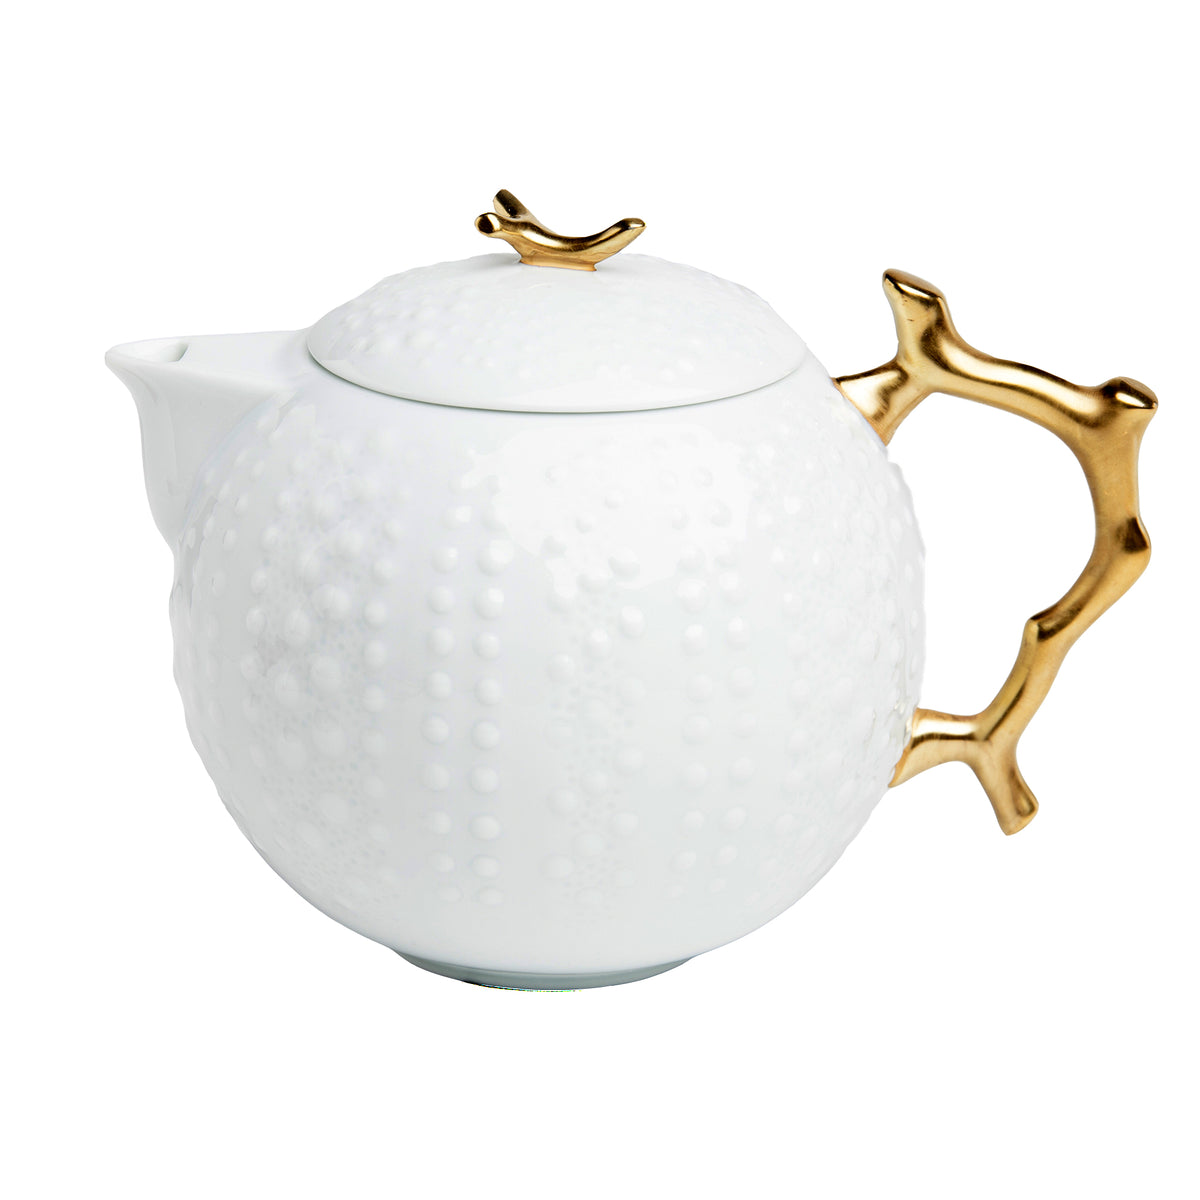 Corail Or Porcelain Tea Pot